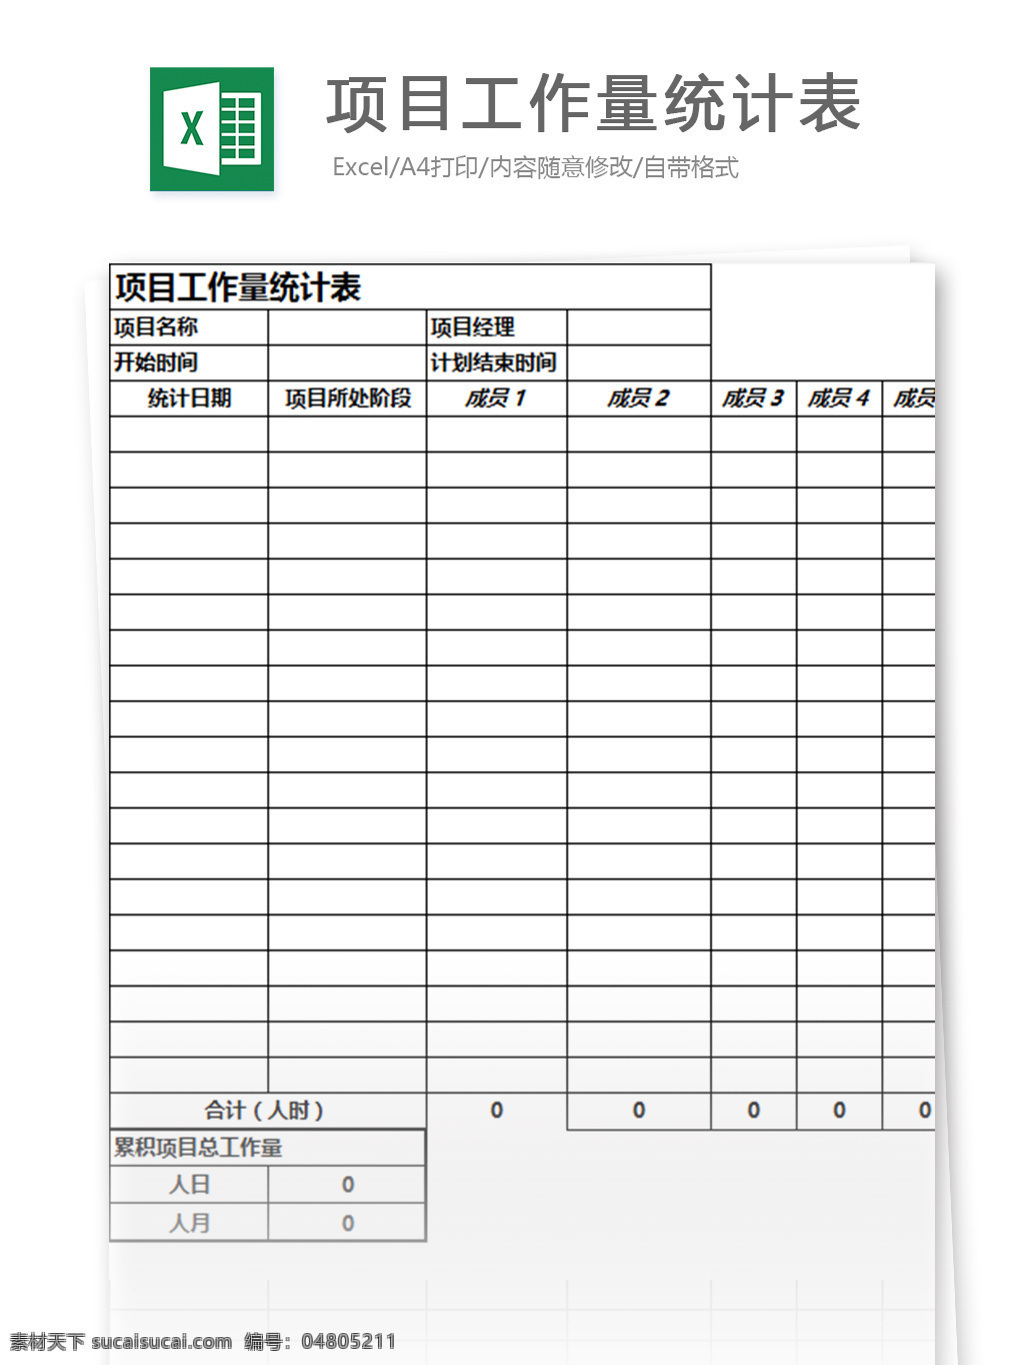 项目 工作量 统计表 excel 表格 模板 表格模板 图表 表格设计 财务报表 行业表格 应用文书